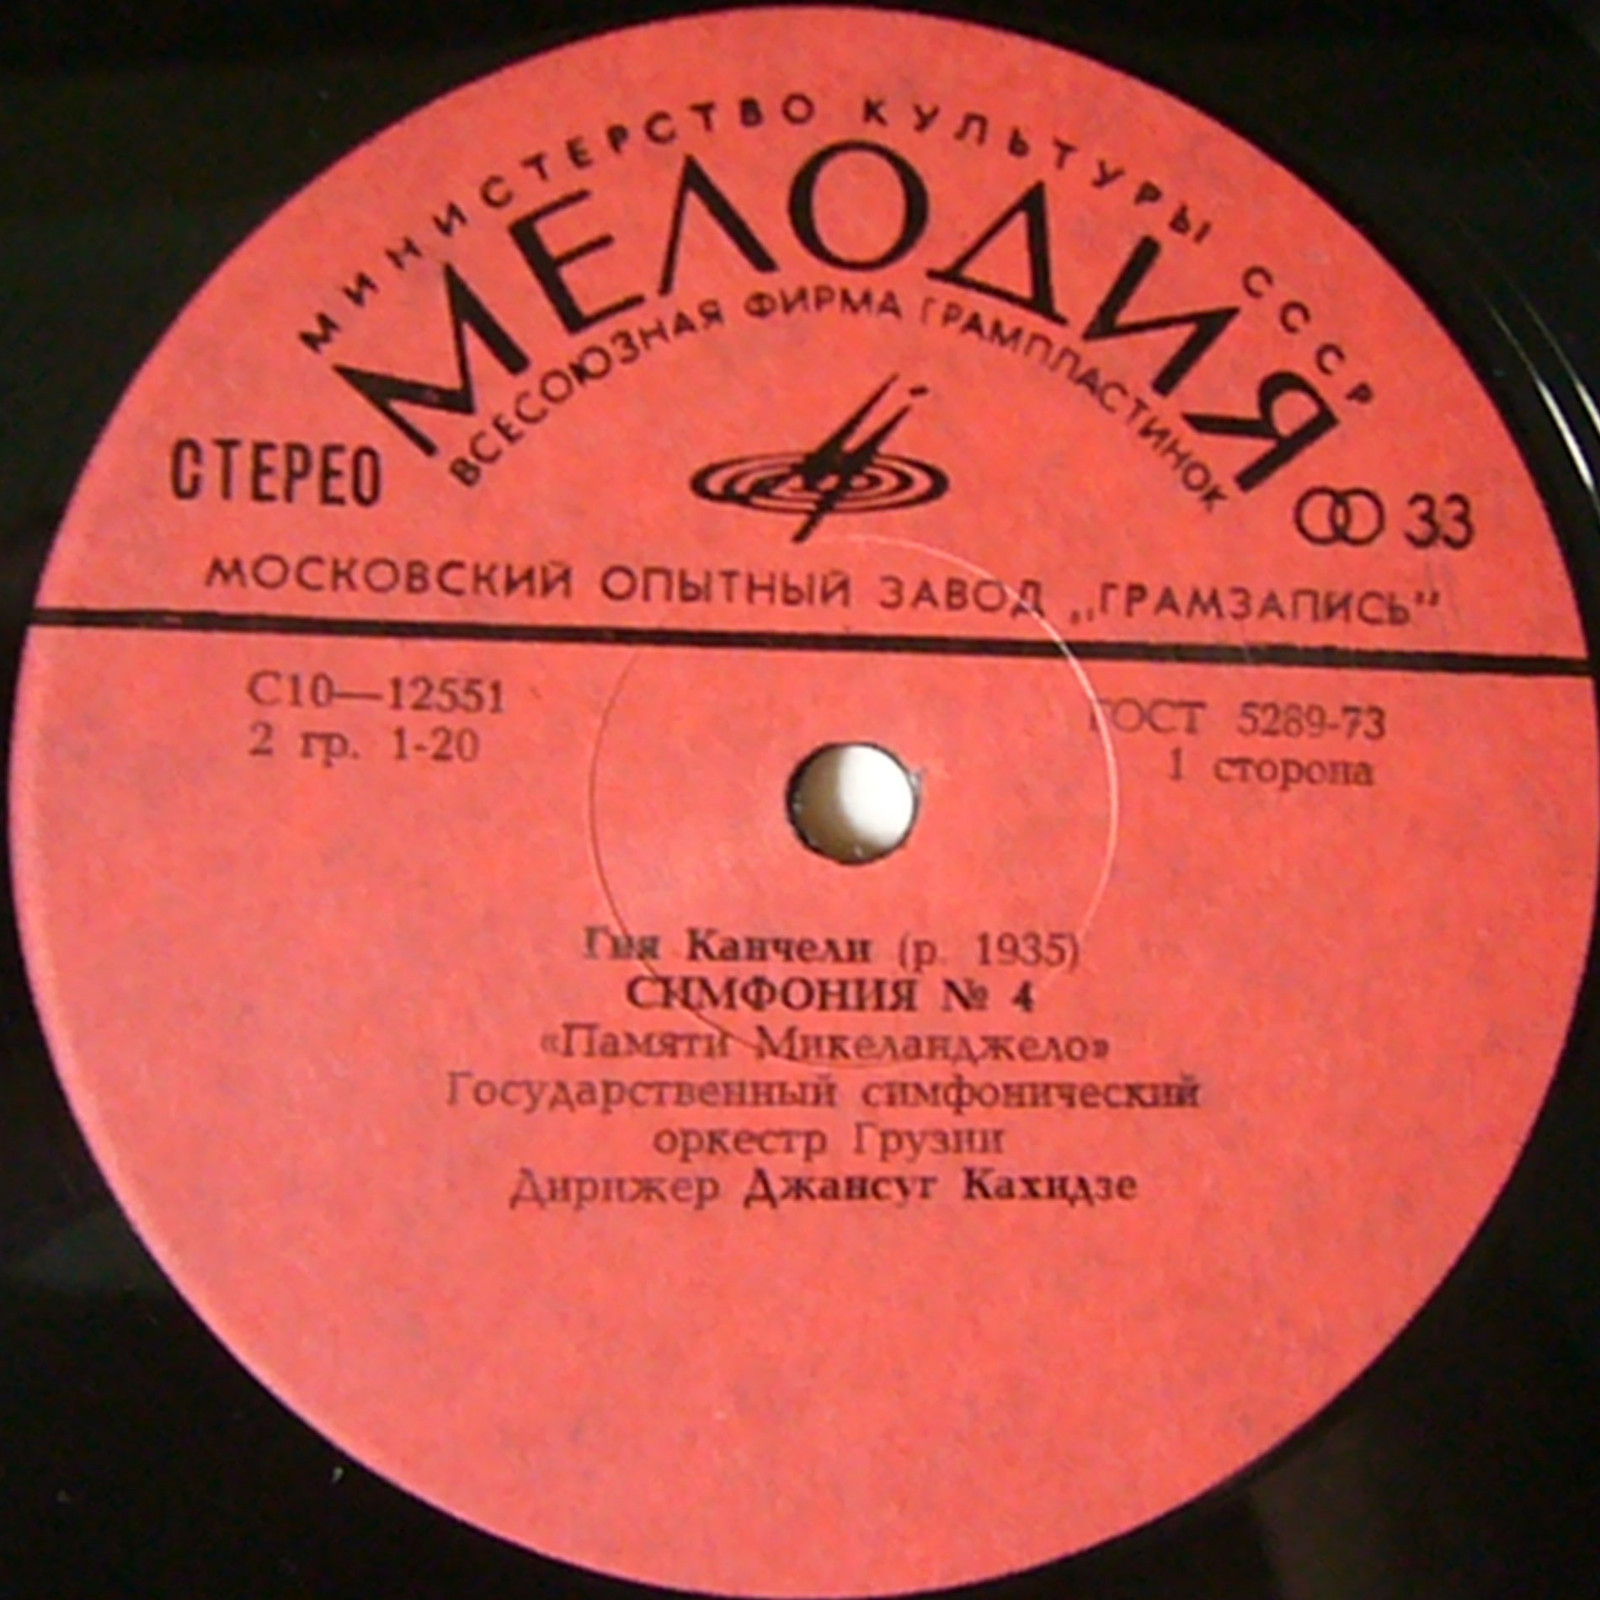 Гия КАНЧЕЛИ (1935). Симфонии N4, N5